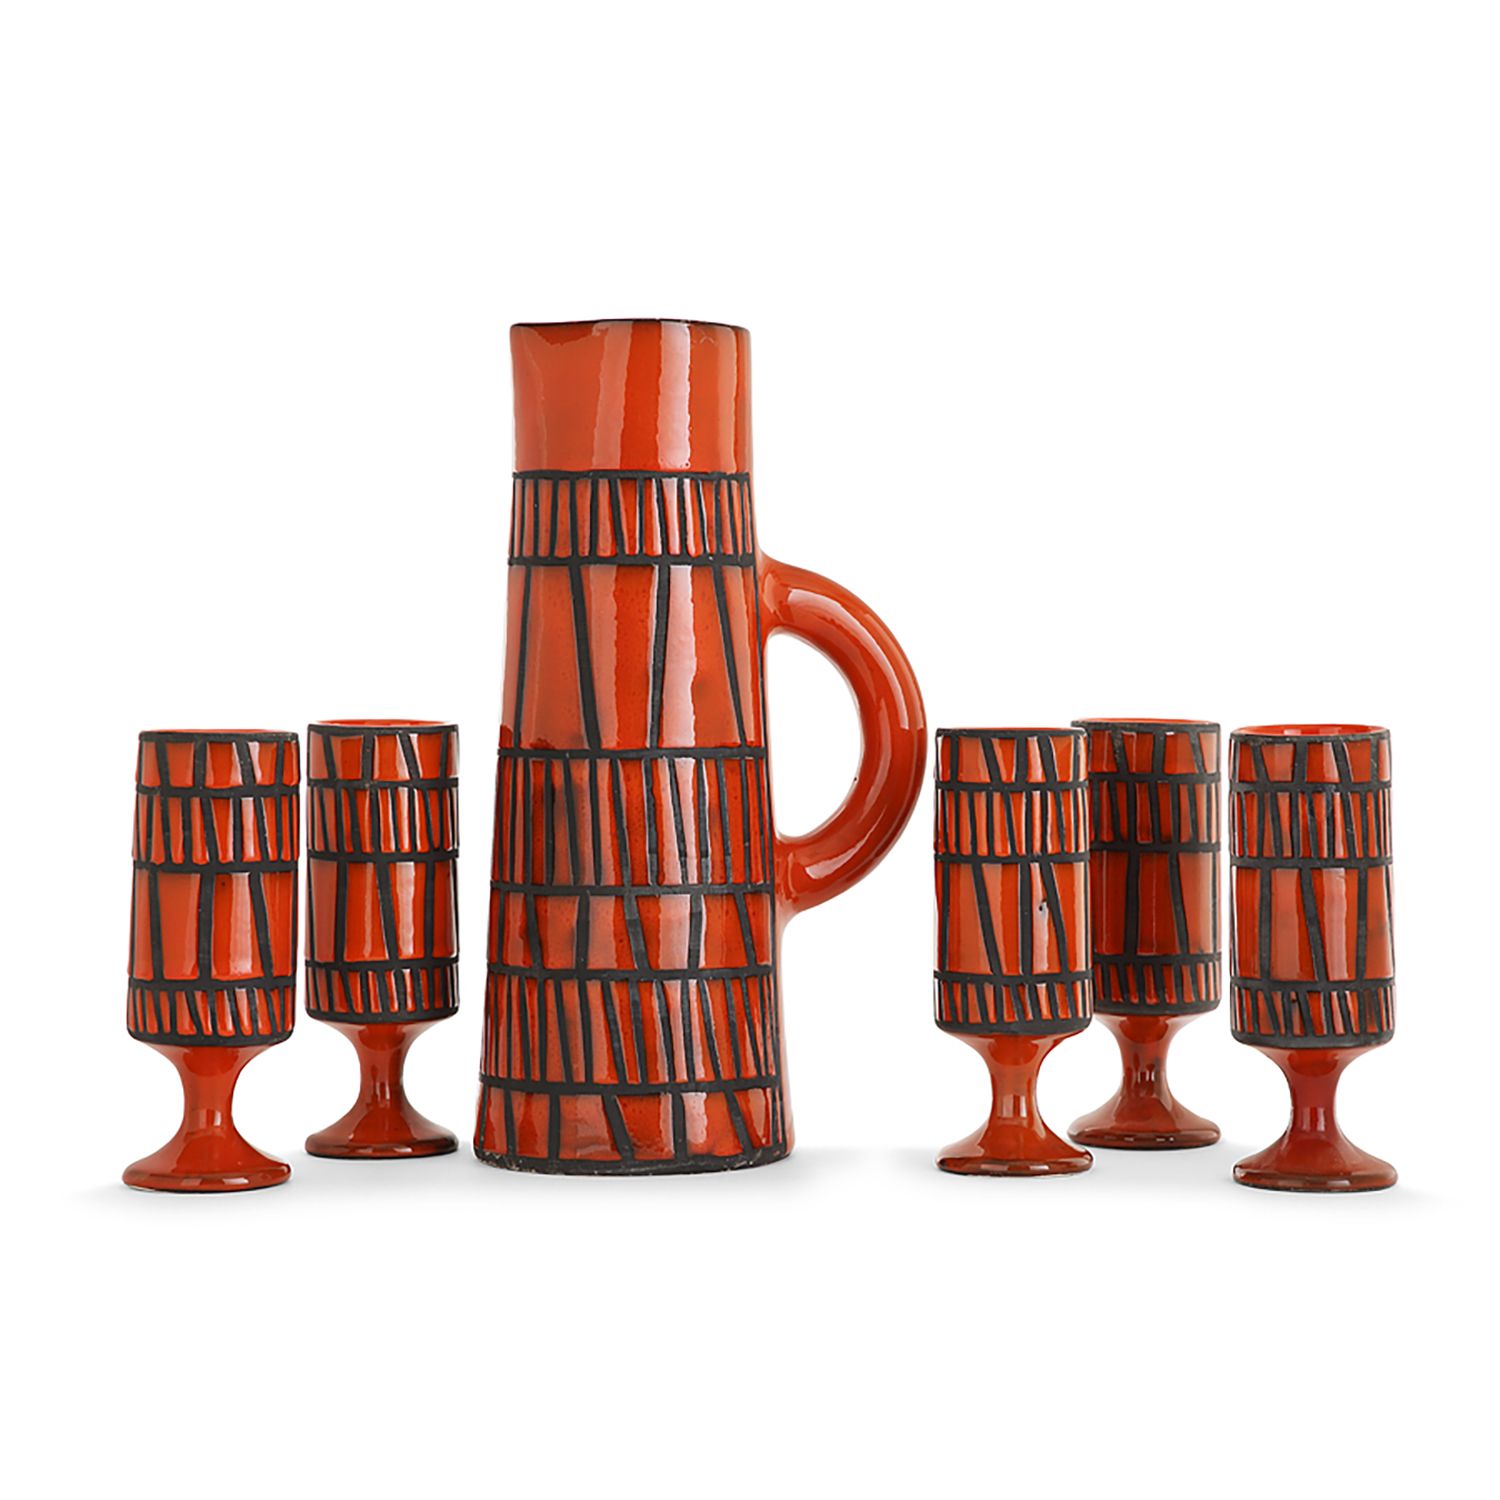 Null 罗杰-卡普伦(1922-2006)

陶器橙汁套装，包括一个截顶的圆锥壶和五个马扎格兰，几何楣饰，黑色雕刻背景上的石蜡储备朱红色珐琅。珐琅彩签名 "C&hellip;